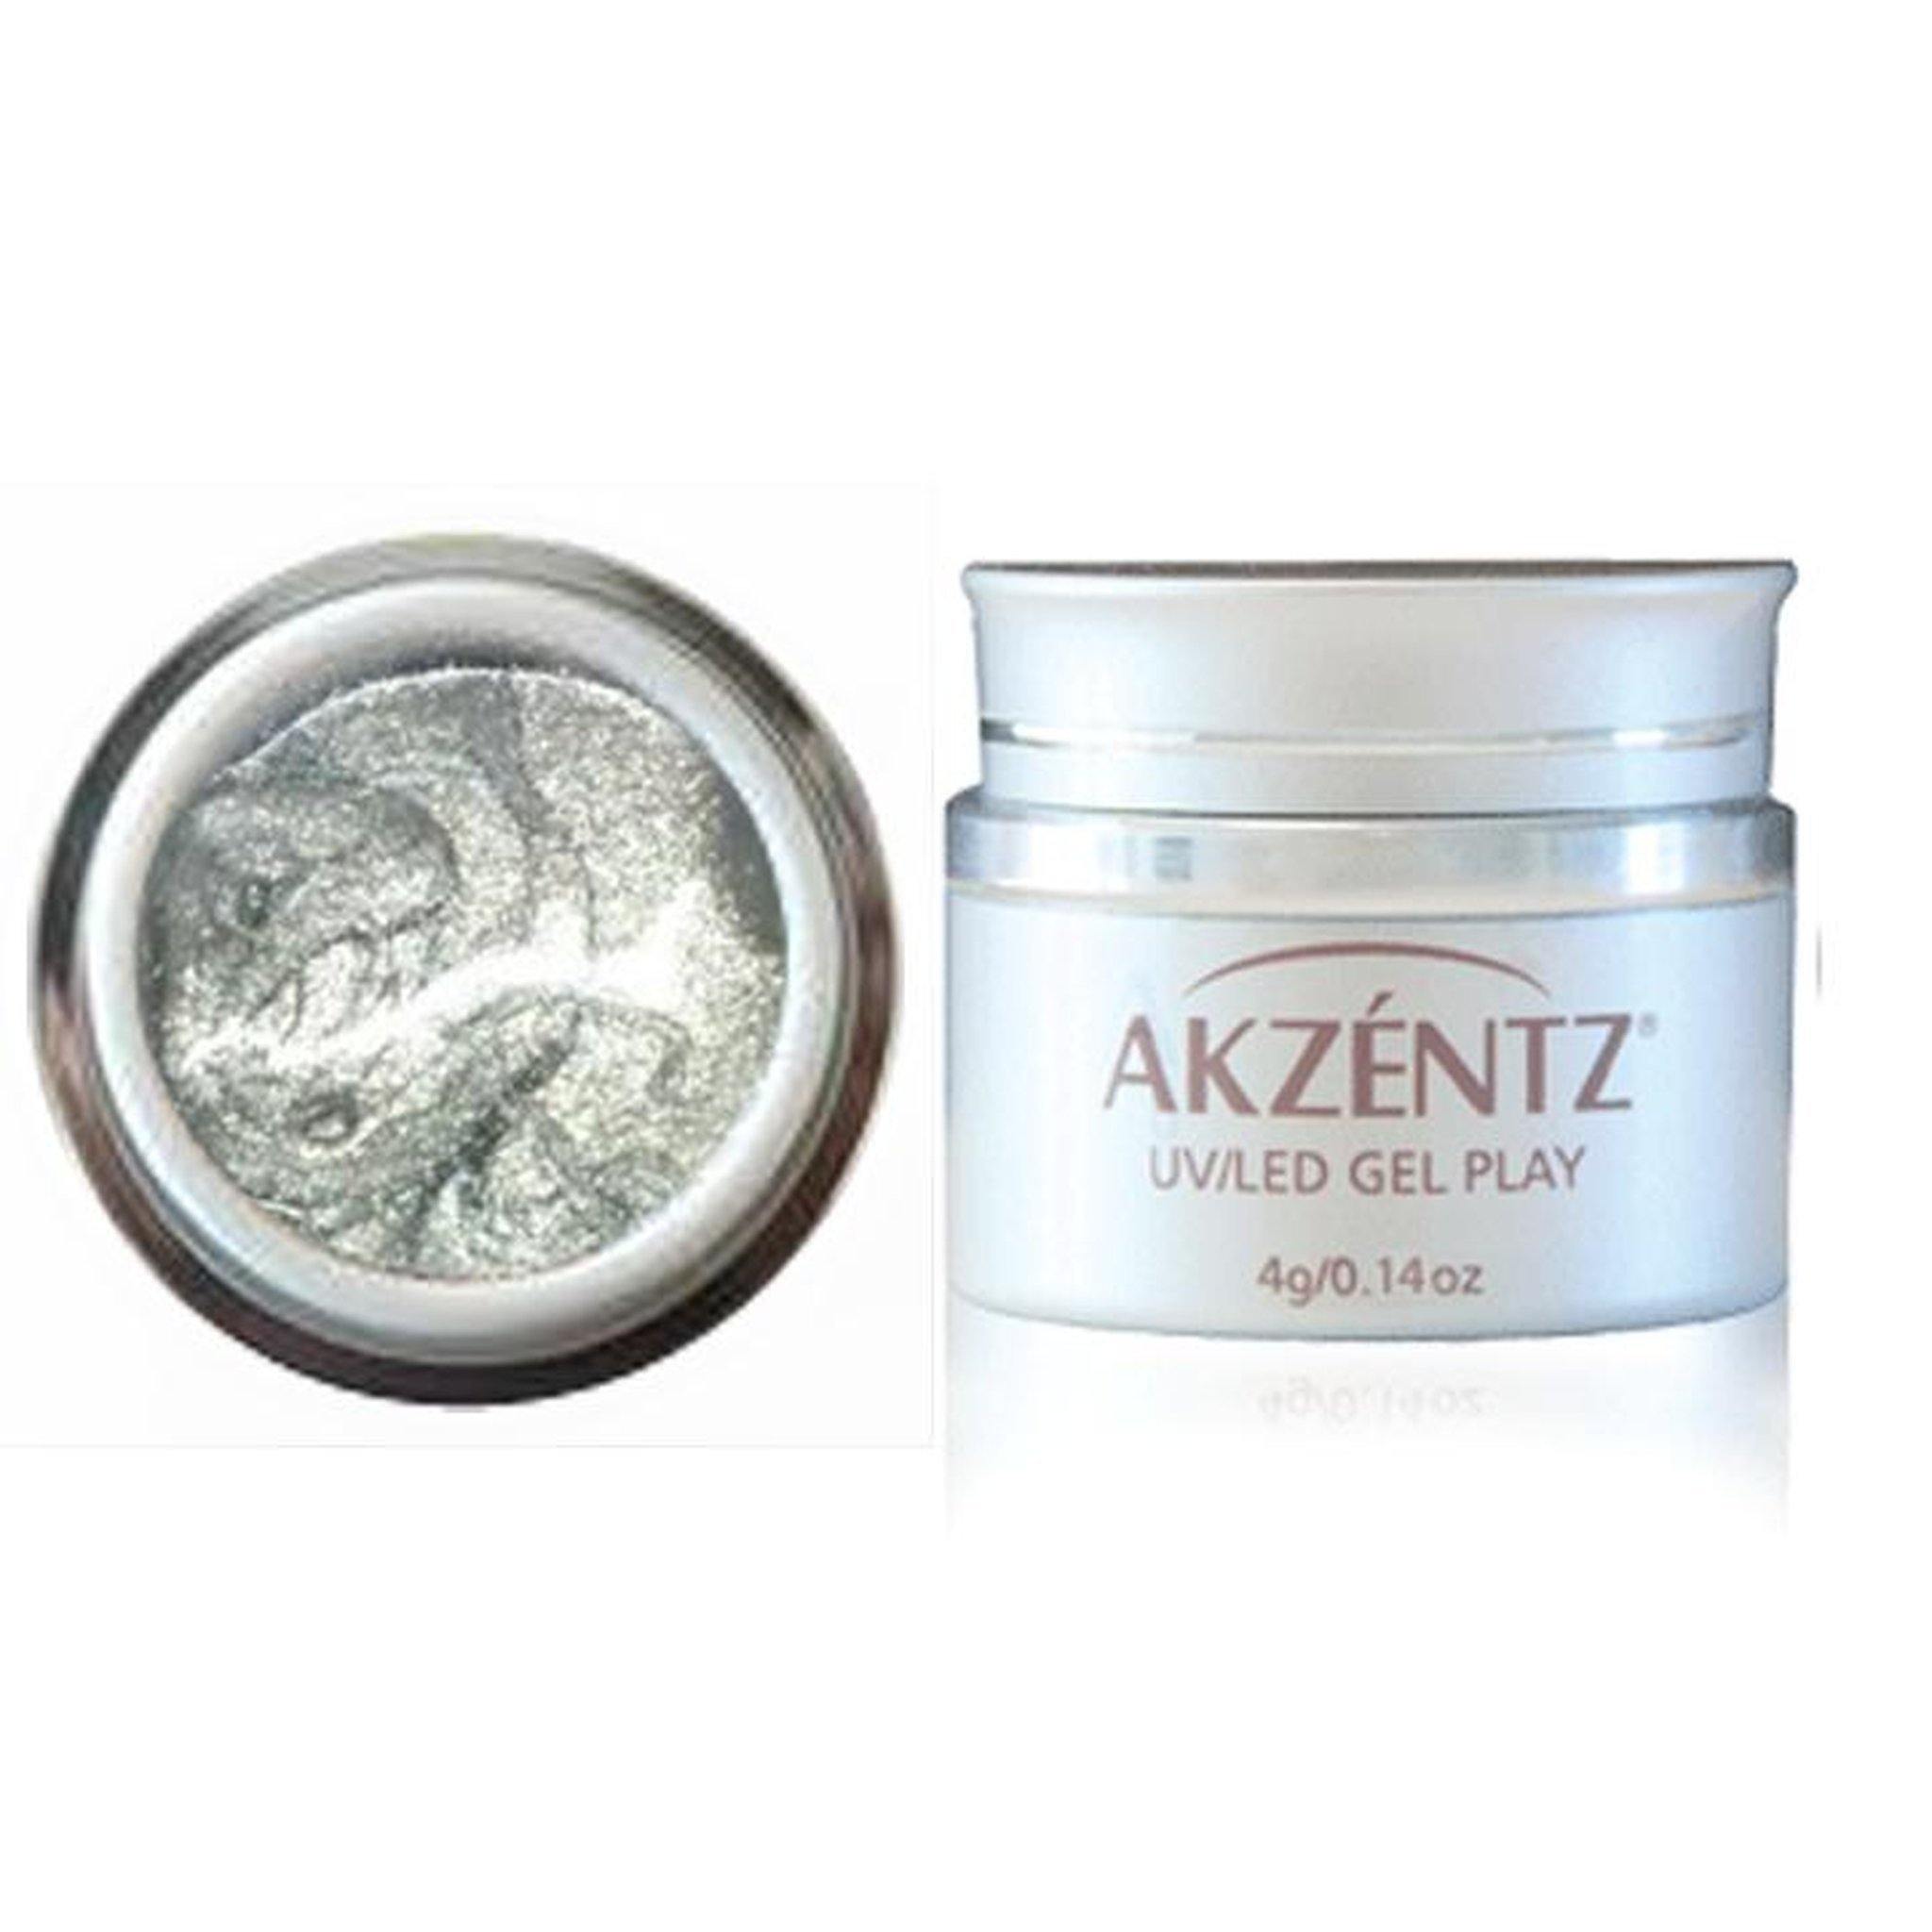 Gel Play - Glitter Platinum Quartz by Akzentz